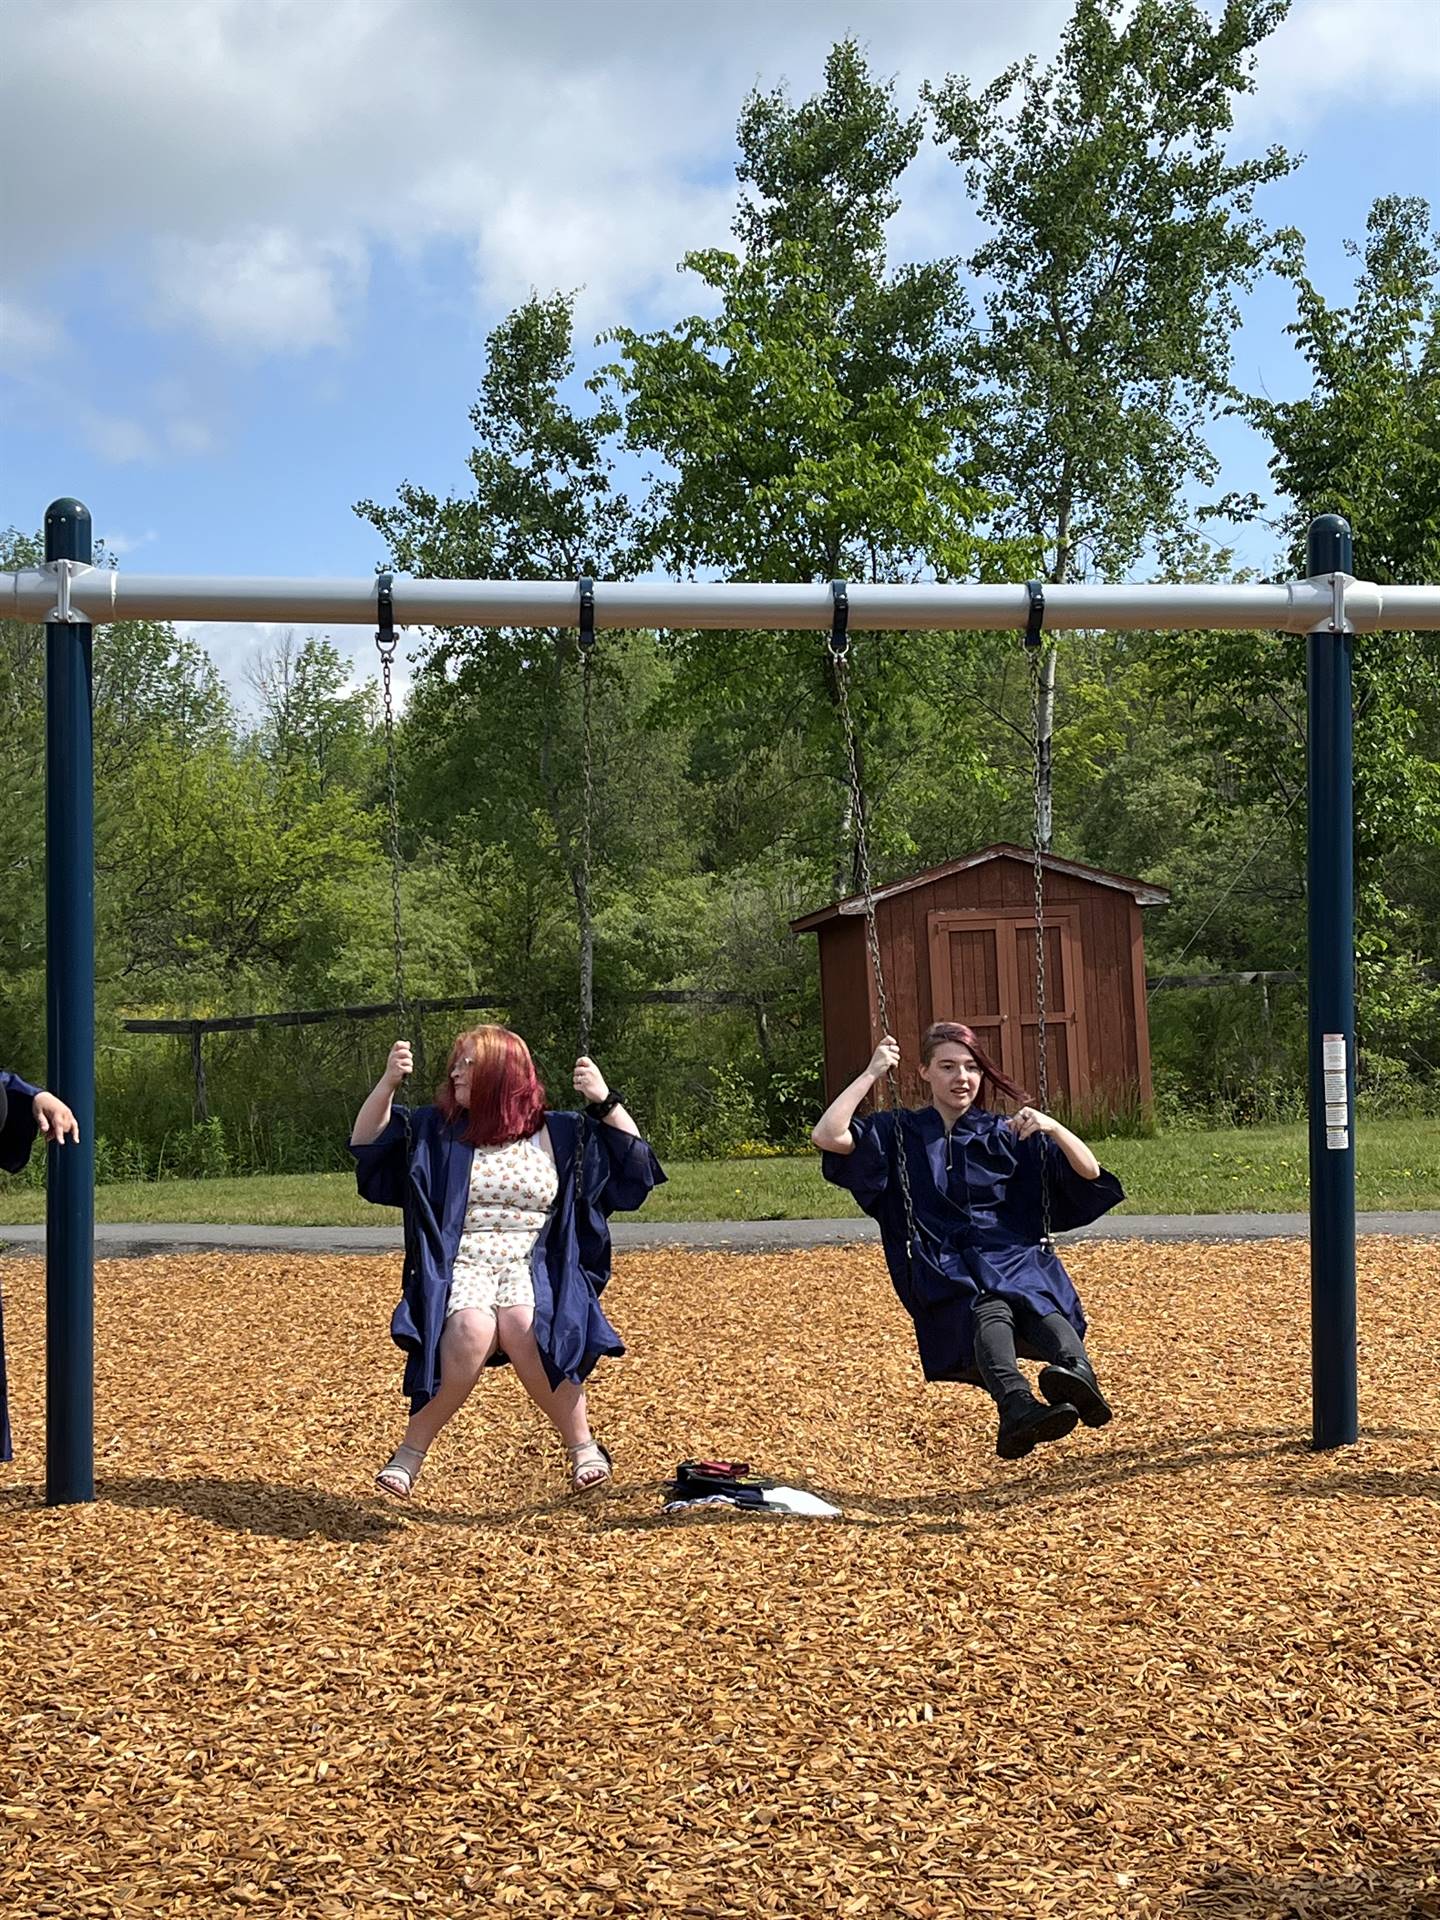 2 senior graduates on playground swings